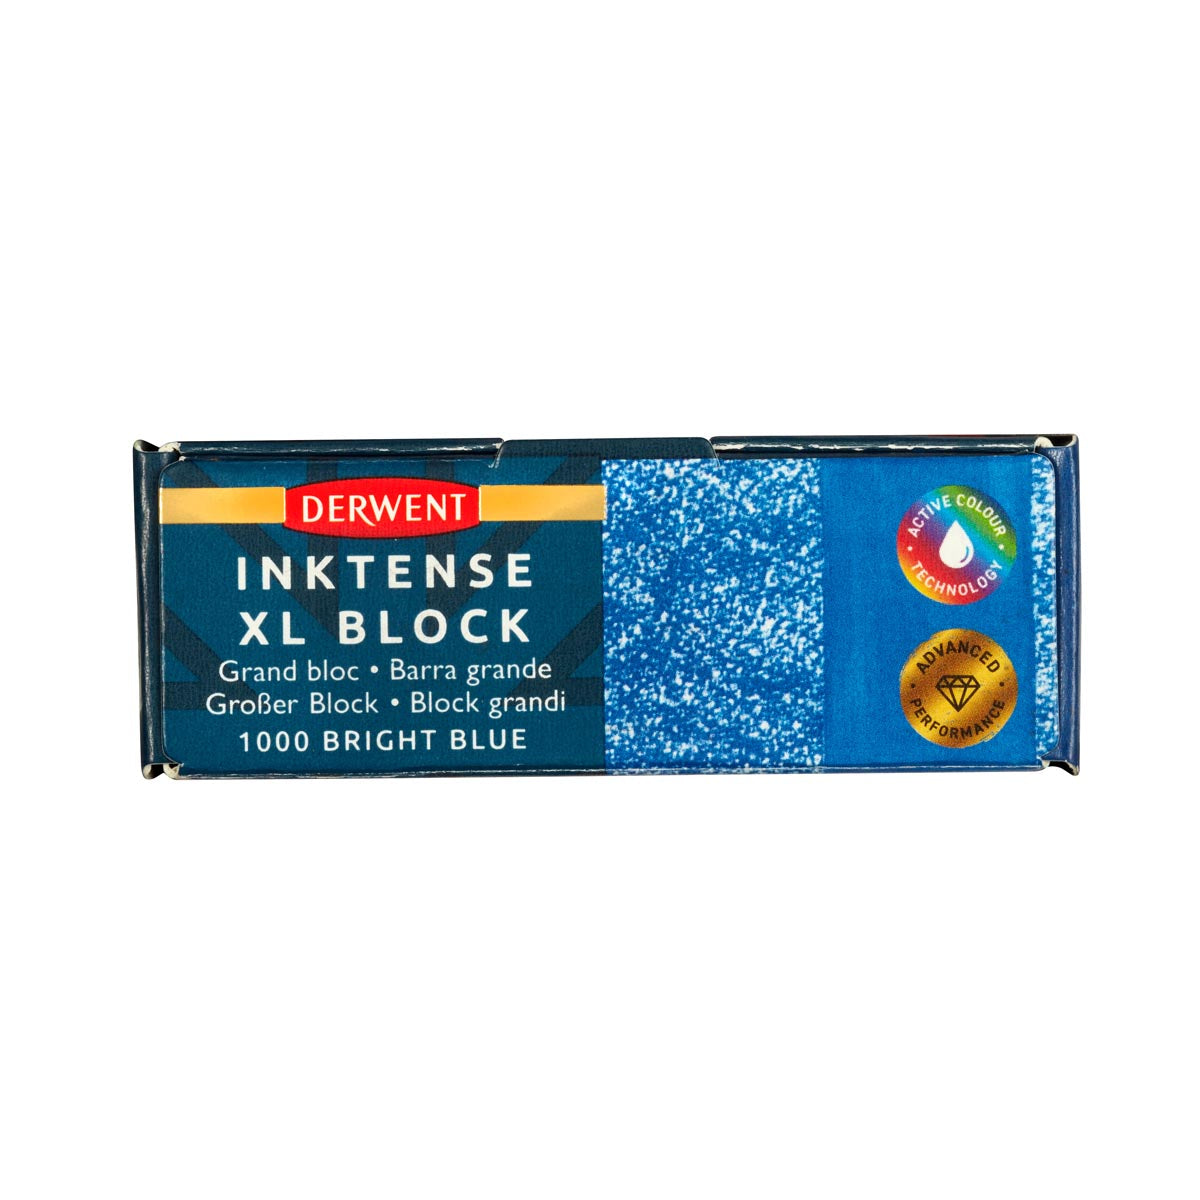 Derwent - Inktense XL Block - Bright Blue